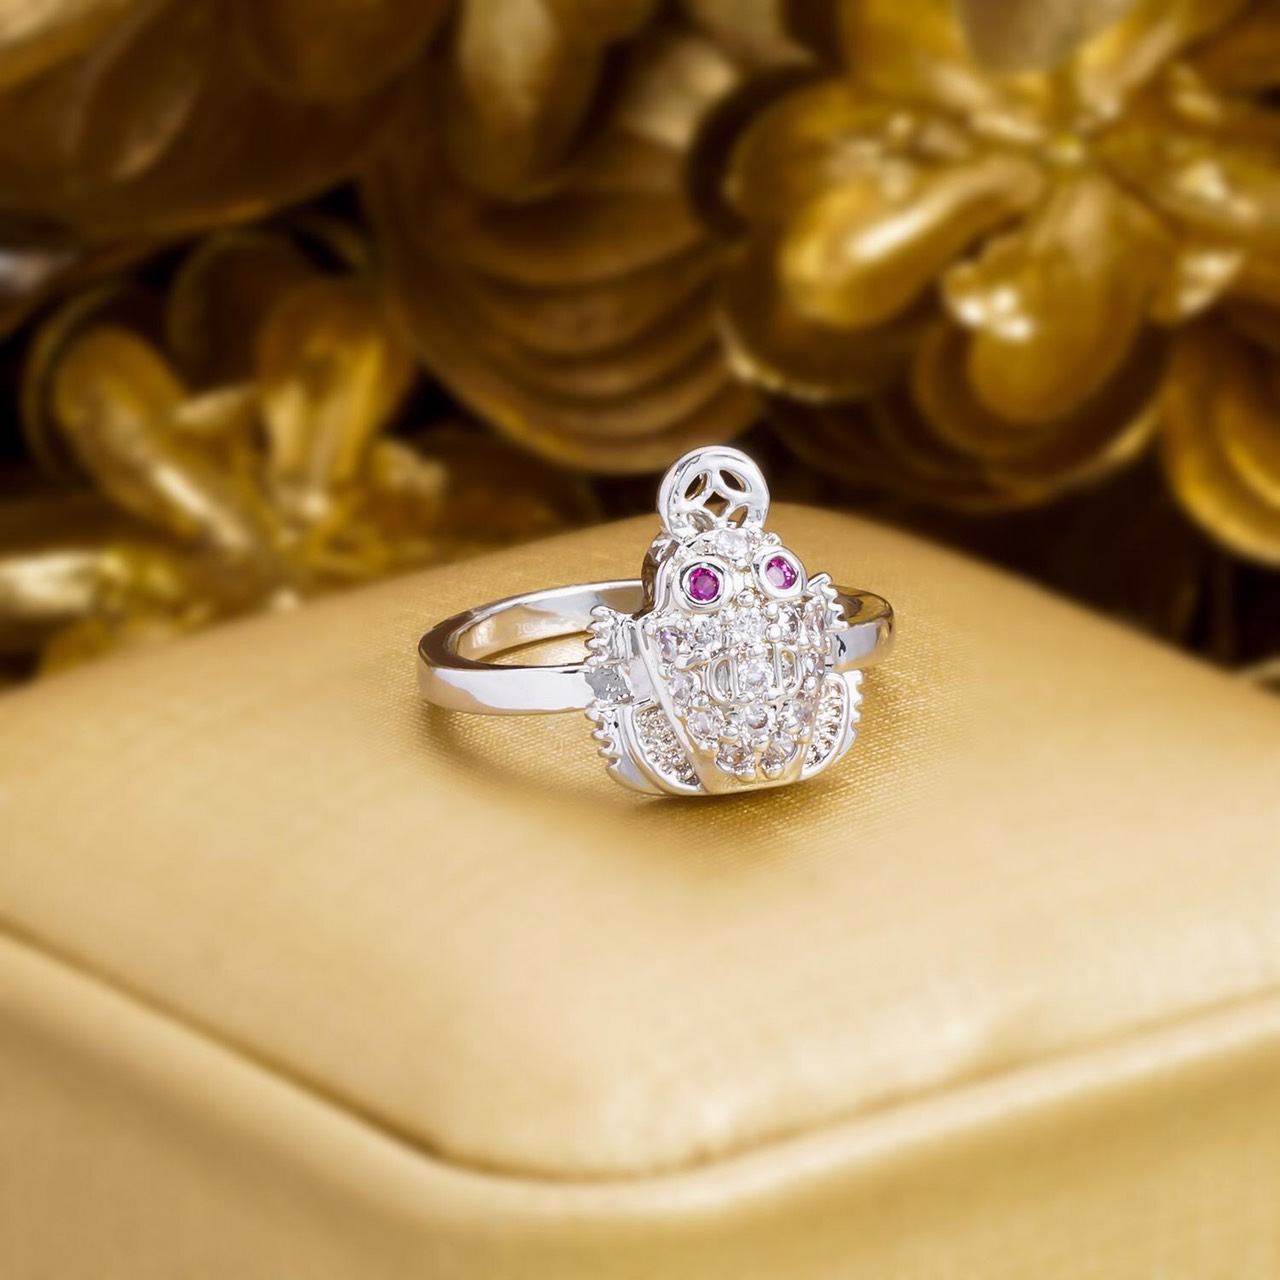 Nhẫn Cóc Phong Thủy Mạ Vàng Bạch Kim - N29072006 - Givishop - Dùng Đi Tiệc Tôn Lên Vẻ Đẹp Của Phụ Nữ , kiểu nhẫn đẹp, nhẫn đẹp cho nữ, mẫu nhẫn đẹp 2020, những mẫu nhẫn đẹp, mẫu nhẫn đẹp cho nữ